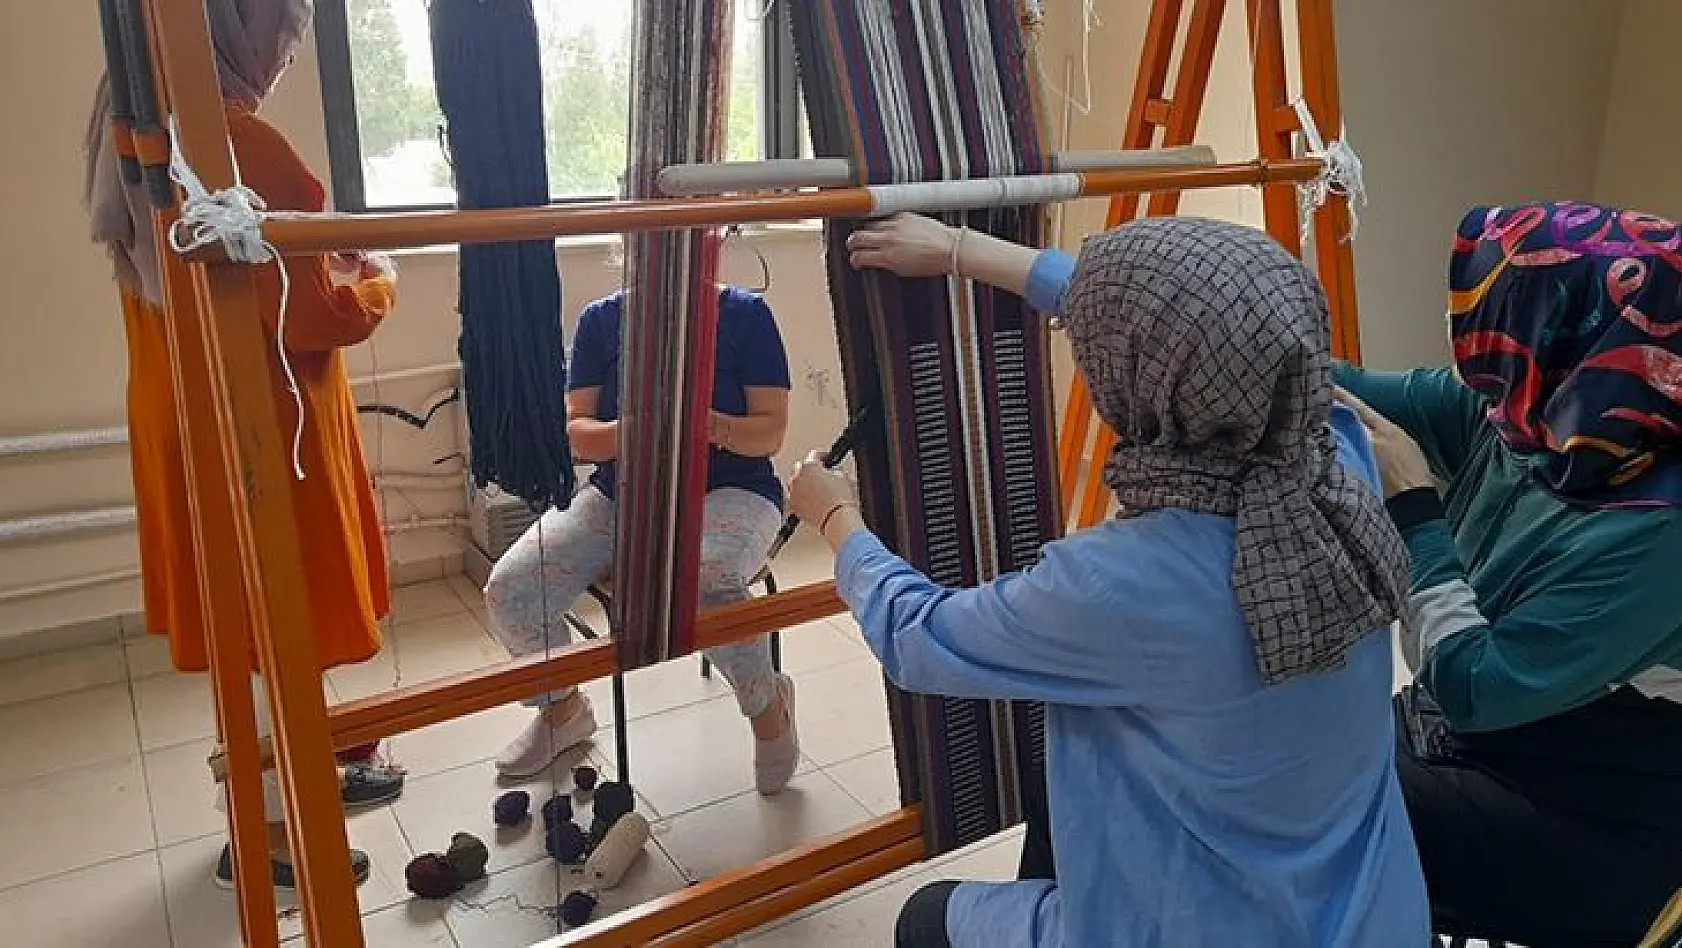 Elazığ'da Geleneksel Kilim ve Cicim Dokuma Sanatı Yaşatılıyor